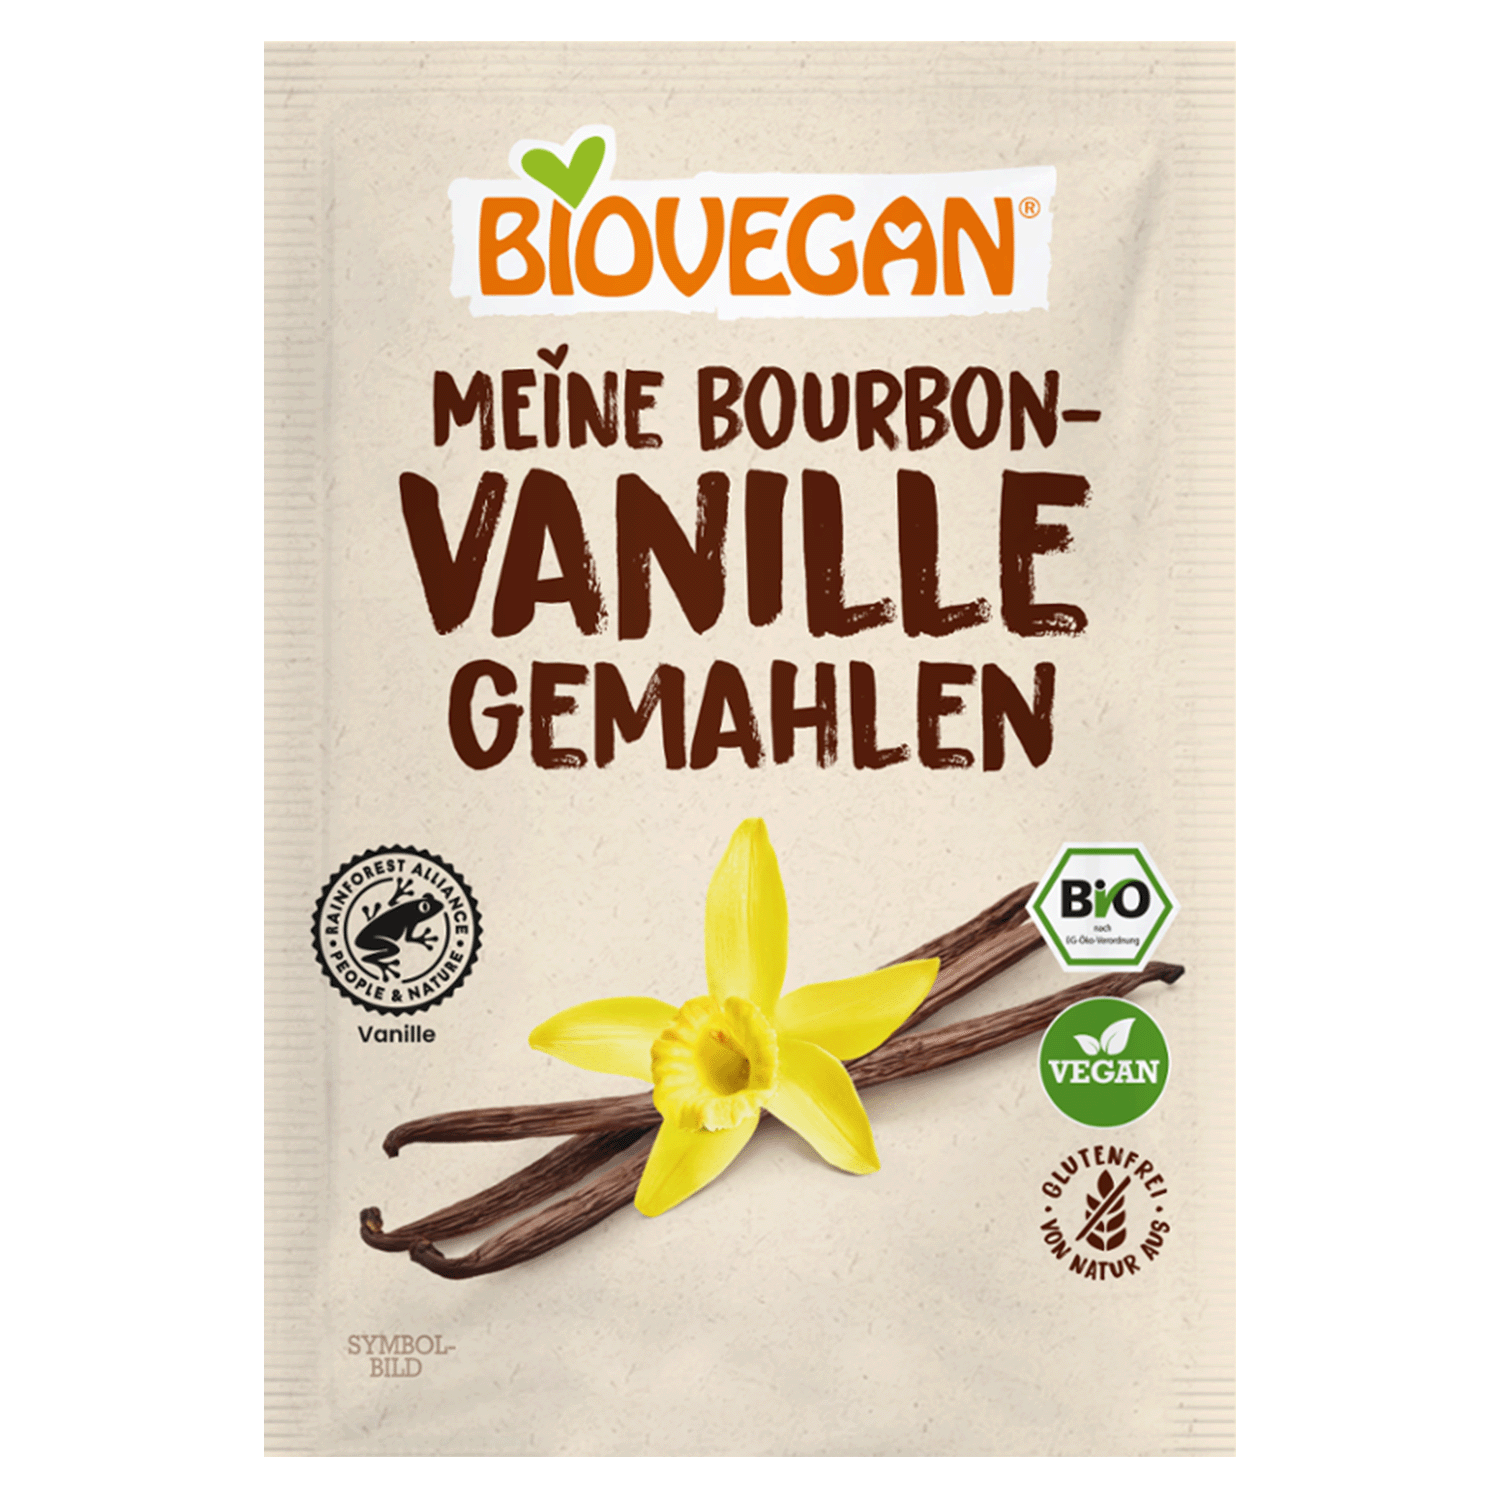 Bourbon-Vanille Gemahlen, BIO, 5g